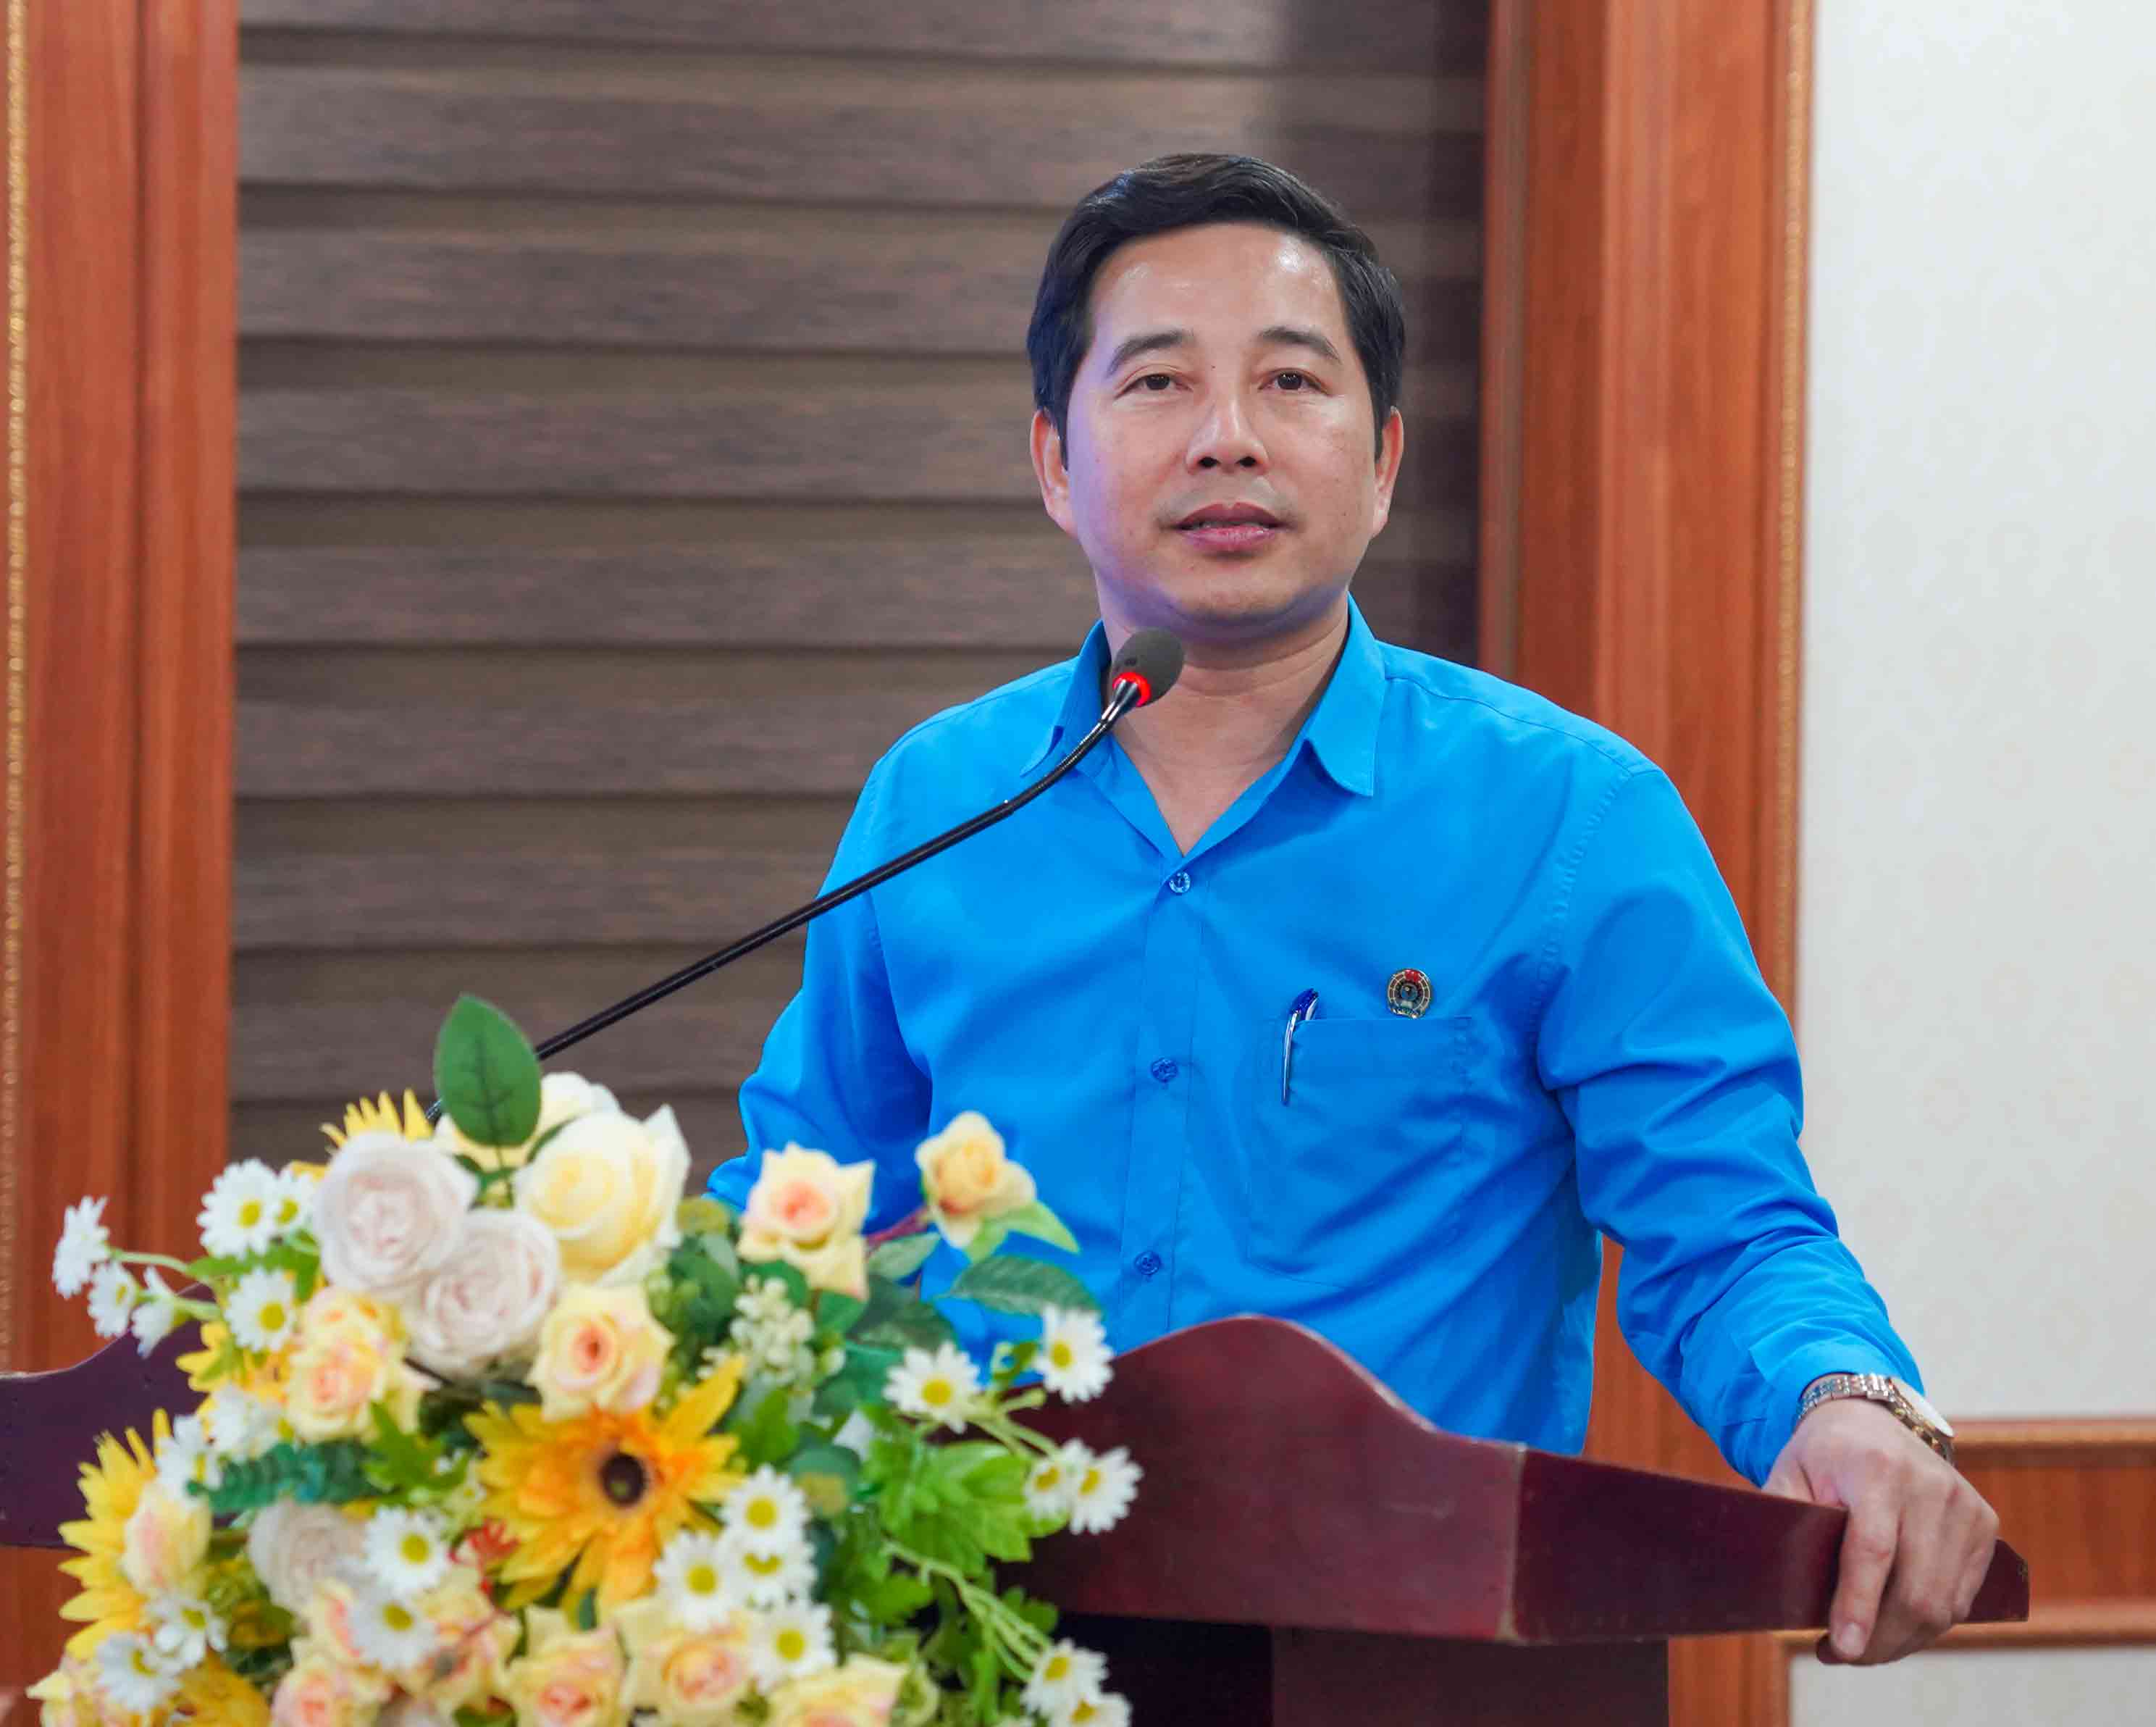 Ông Đặng Văn Hải – Chủ tịch Công đoàn ngành Giáo dục tỉnh Nghệ An cảm ơn người lao động Trung tâm đã luôn yêu nghề, đóng góp tích cực vào việc thực hiện các nhiệm vụ chính trị của ngành